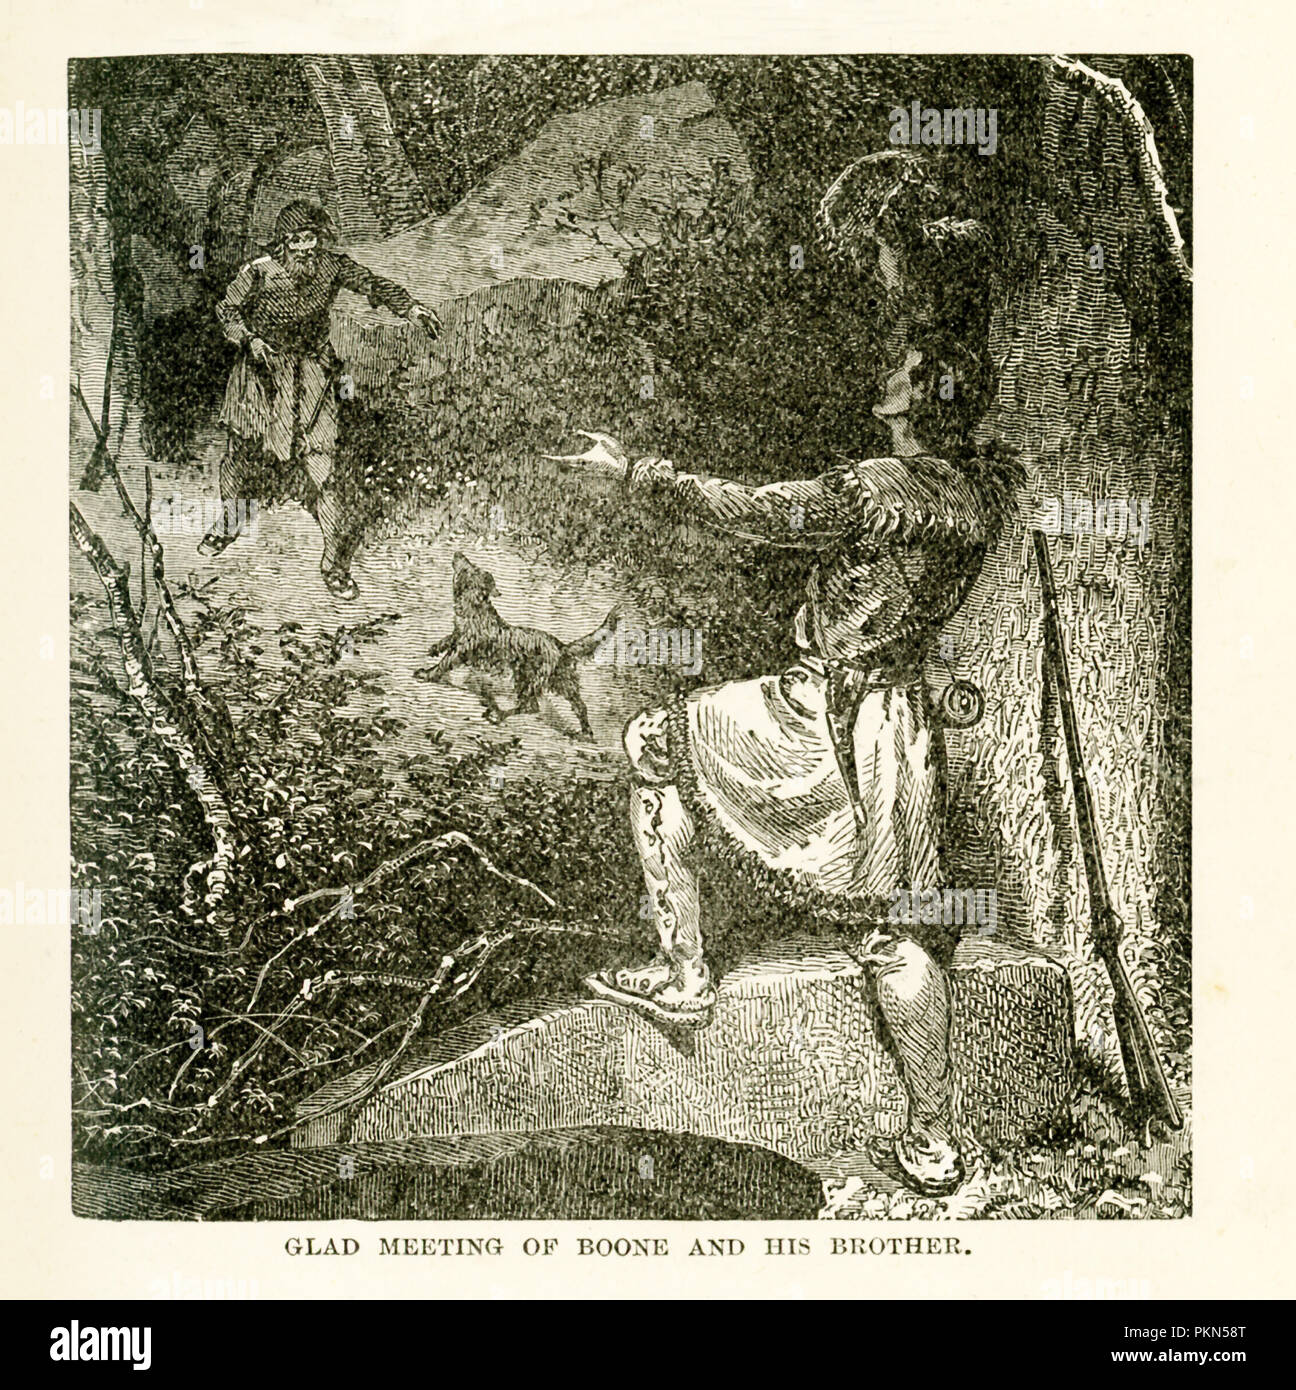 Daniel Boone (1734-1820) war ein US-amerikanischer frontiersman, Reading, Pennsylvania geboren wurde. Im März 1775, als Vorauszahlung agent für Siebenbürgen Co., er strahlte Wilderness Road und gründete Boonesboro (auch buchstabiertes Boonesborough) auf Kentucky River. Er wurde gefangen genommen von Indianern im Jahre 1778, und er entging und nach Missouri zog nach Landtitel in Kentucky wurden für ungültig erklärt. Seine Abenteuer wurde durch die so genannte autobiographischen Bericht von John filson bekannt. Diese Abbildung ist von dem Buch mit dem Titel: Geschichte des Wilden Westens und Lagerfeuer Chats: Wird die vollständige und authentische Geschichte der G Stockfoto